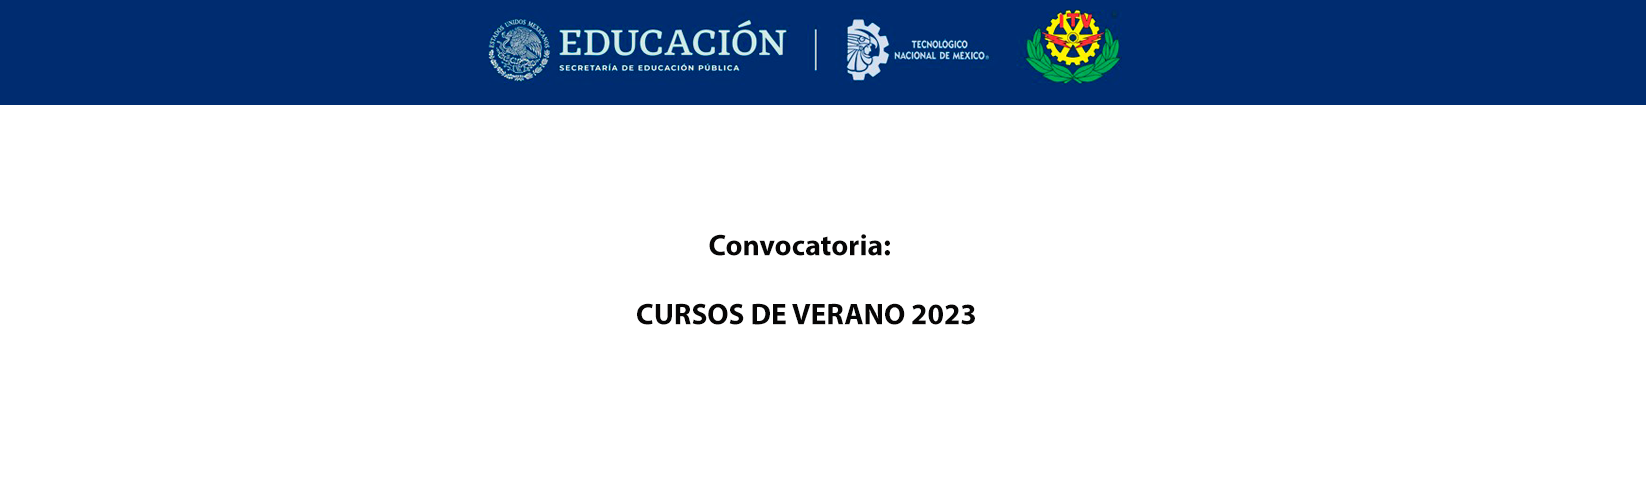 CONVOCATORIA CURSOS DE VERANO 2023